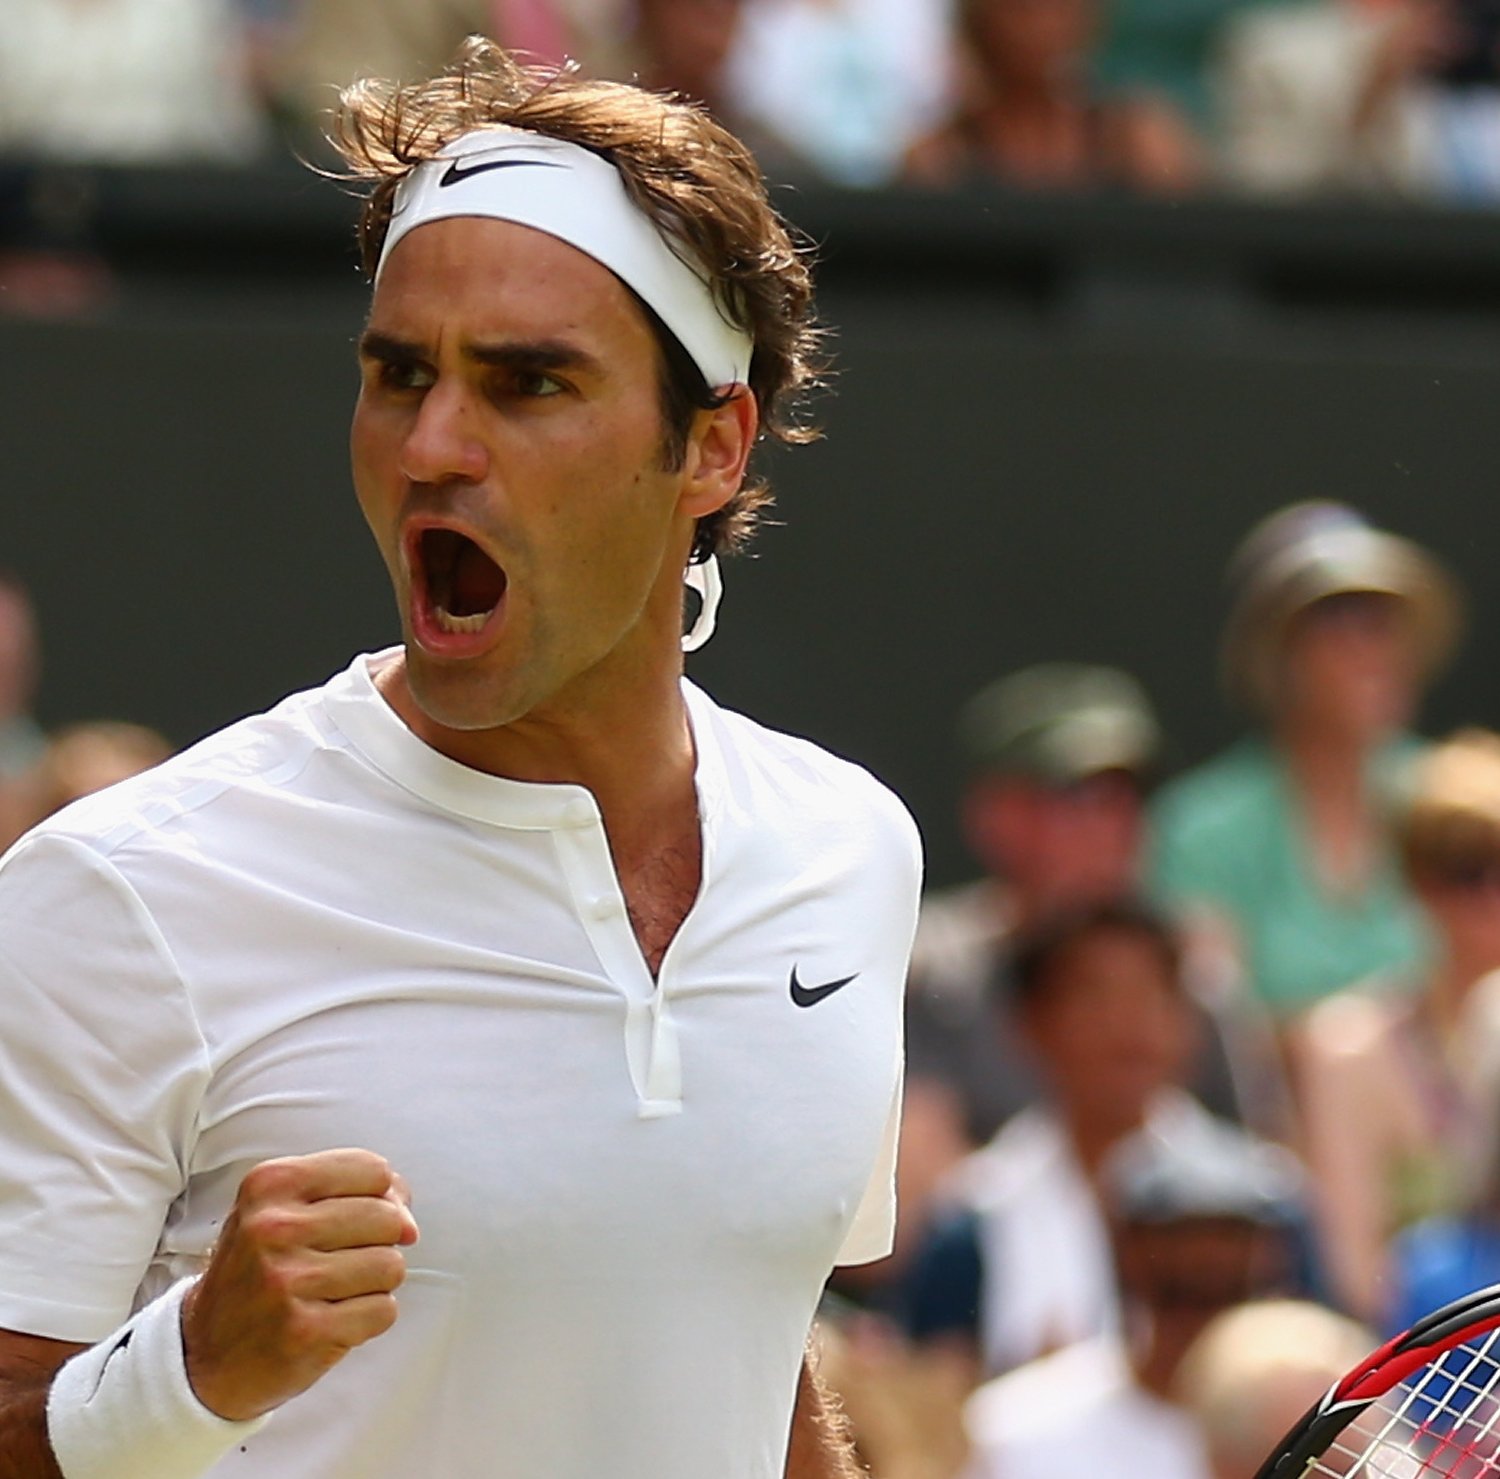 Roger Federer vs. Sam Querrey: Score and Reaction from 2015 Wimbledon | Bleacher Report